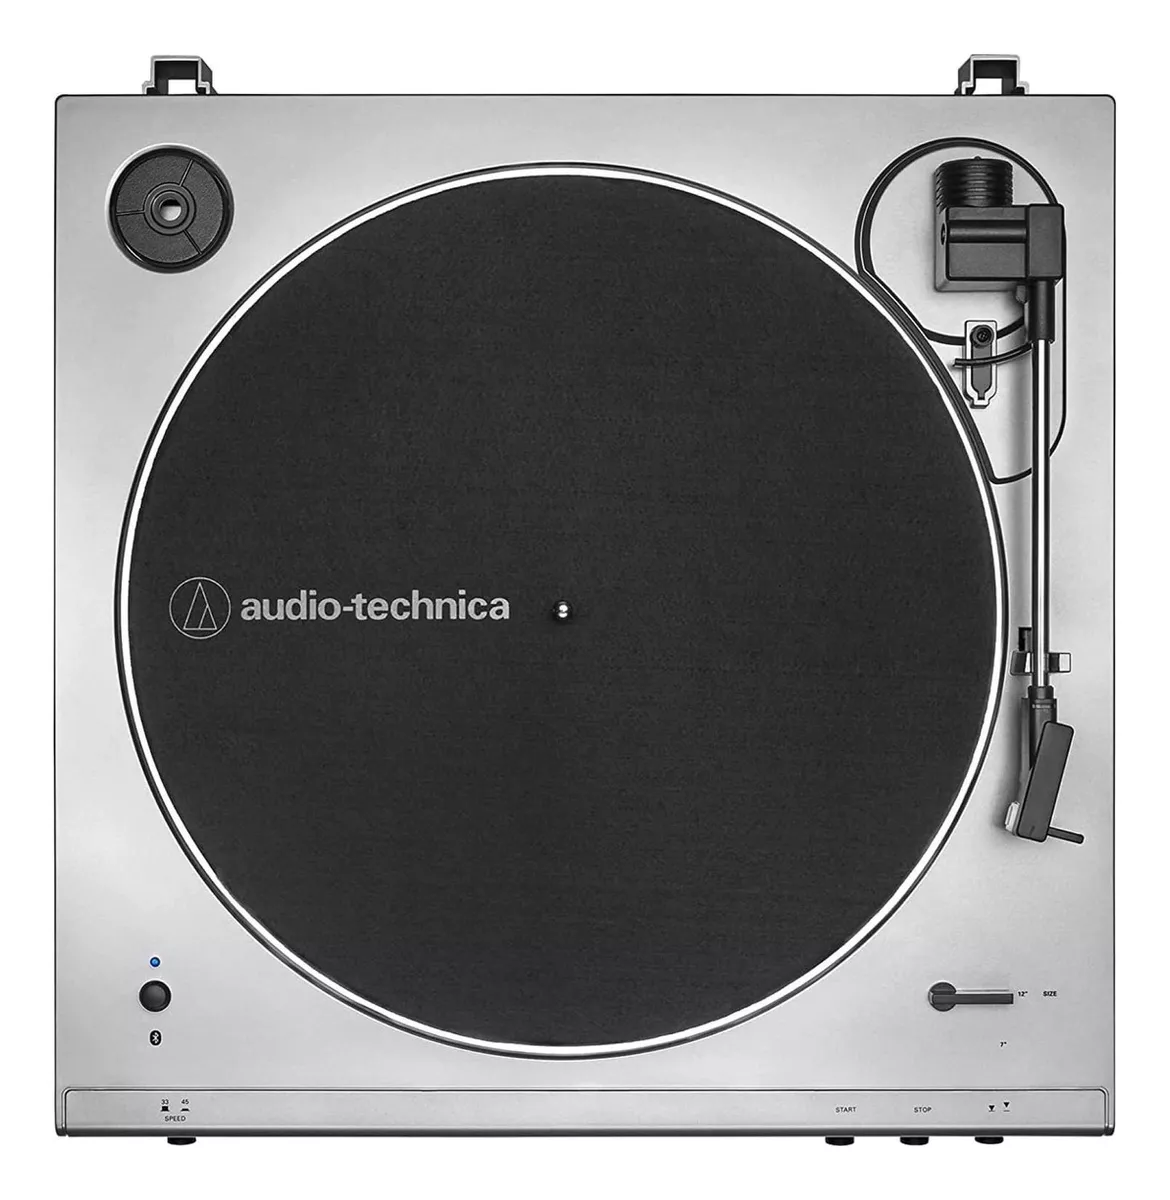 Primeira imagem para pesquisa de toca discos audio technica